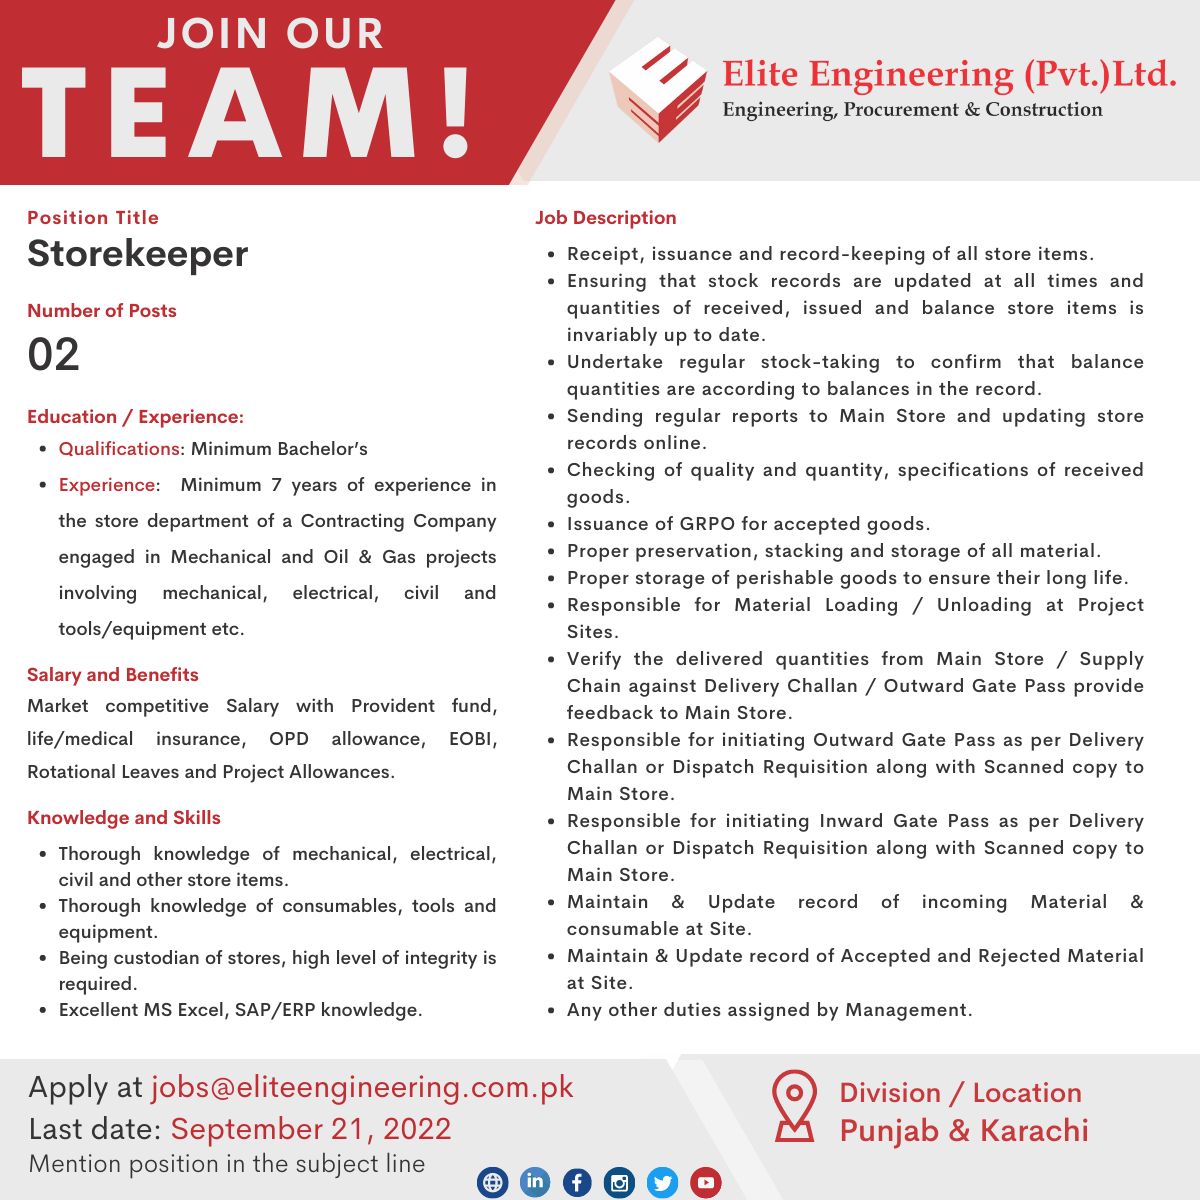 Elite Engineering Pvt Ltd Jobs September 2022